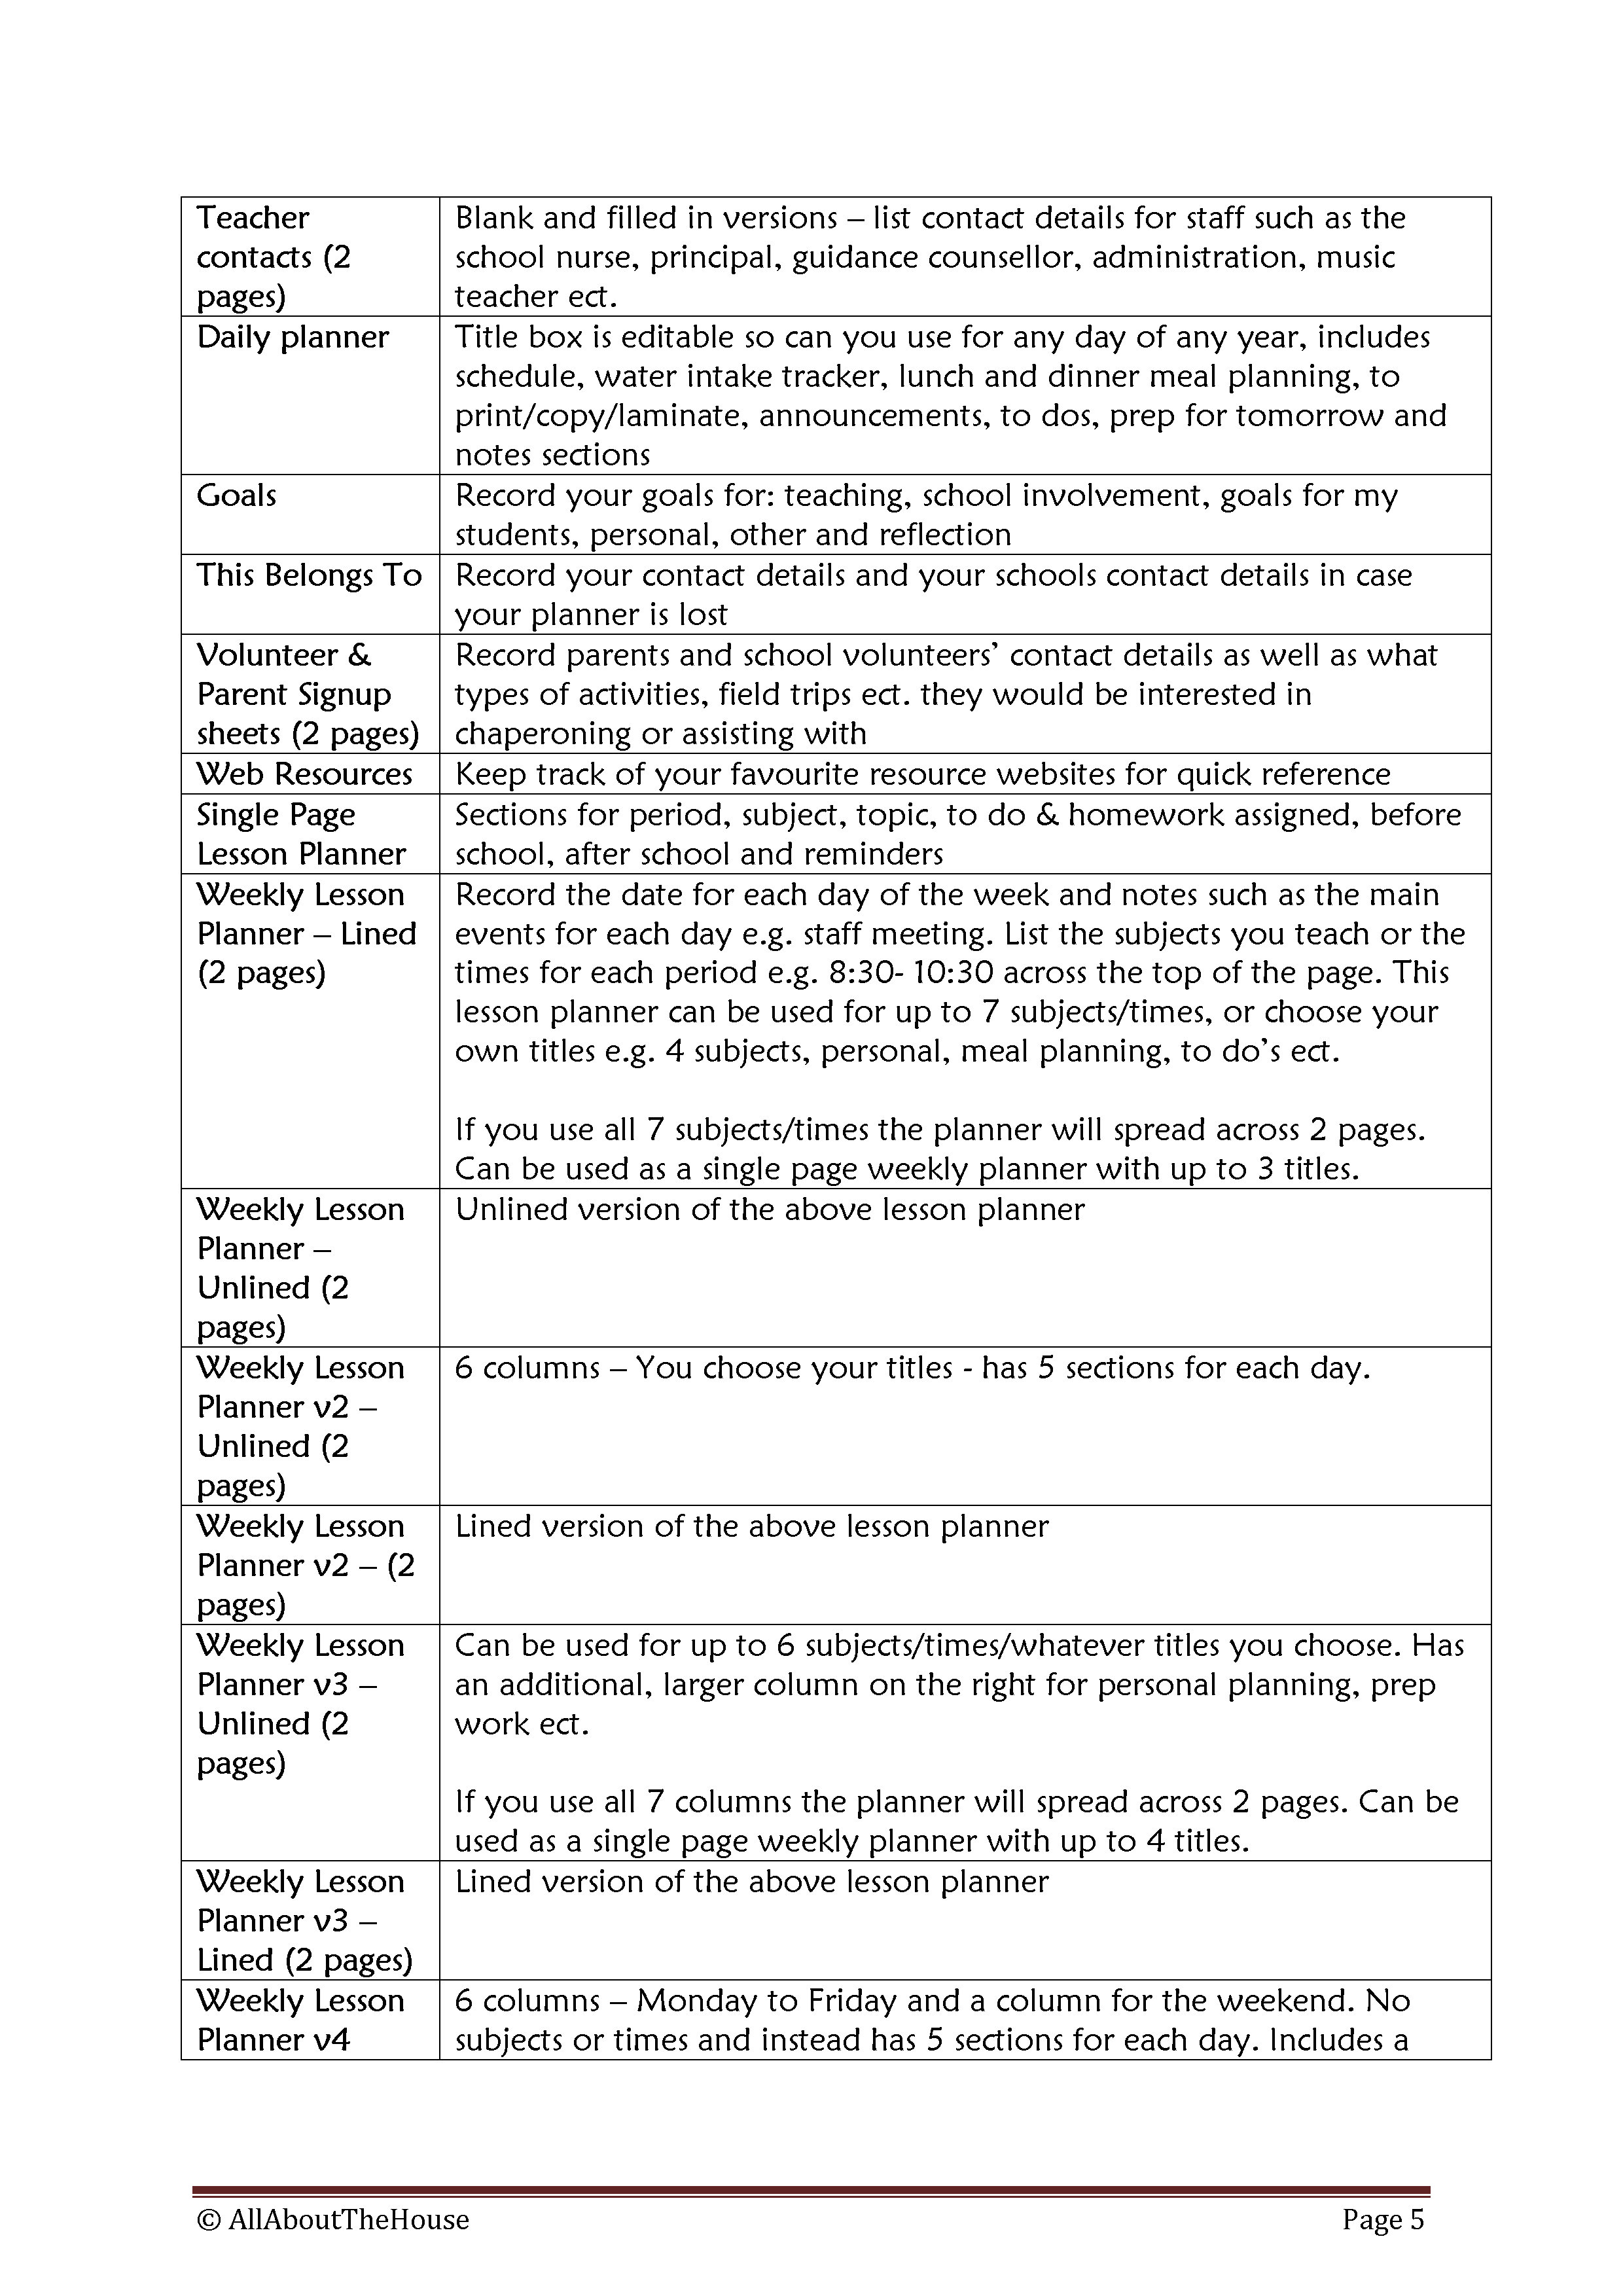 Implementation Guide - Teacher Planner(5)